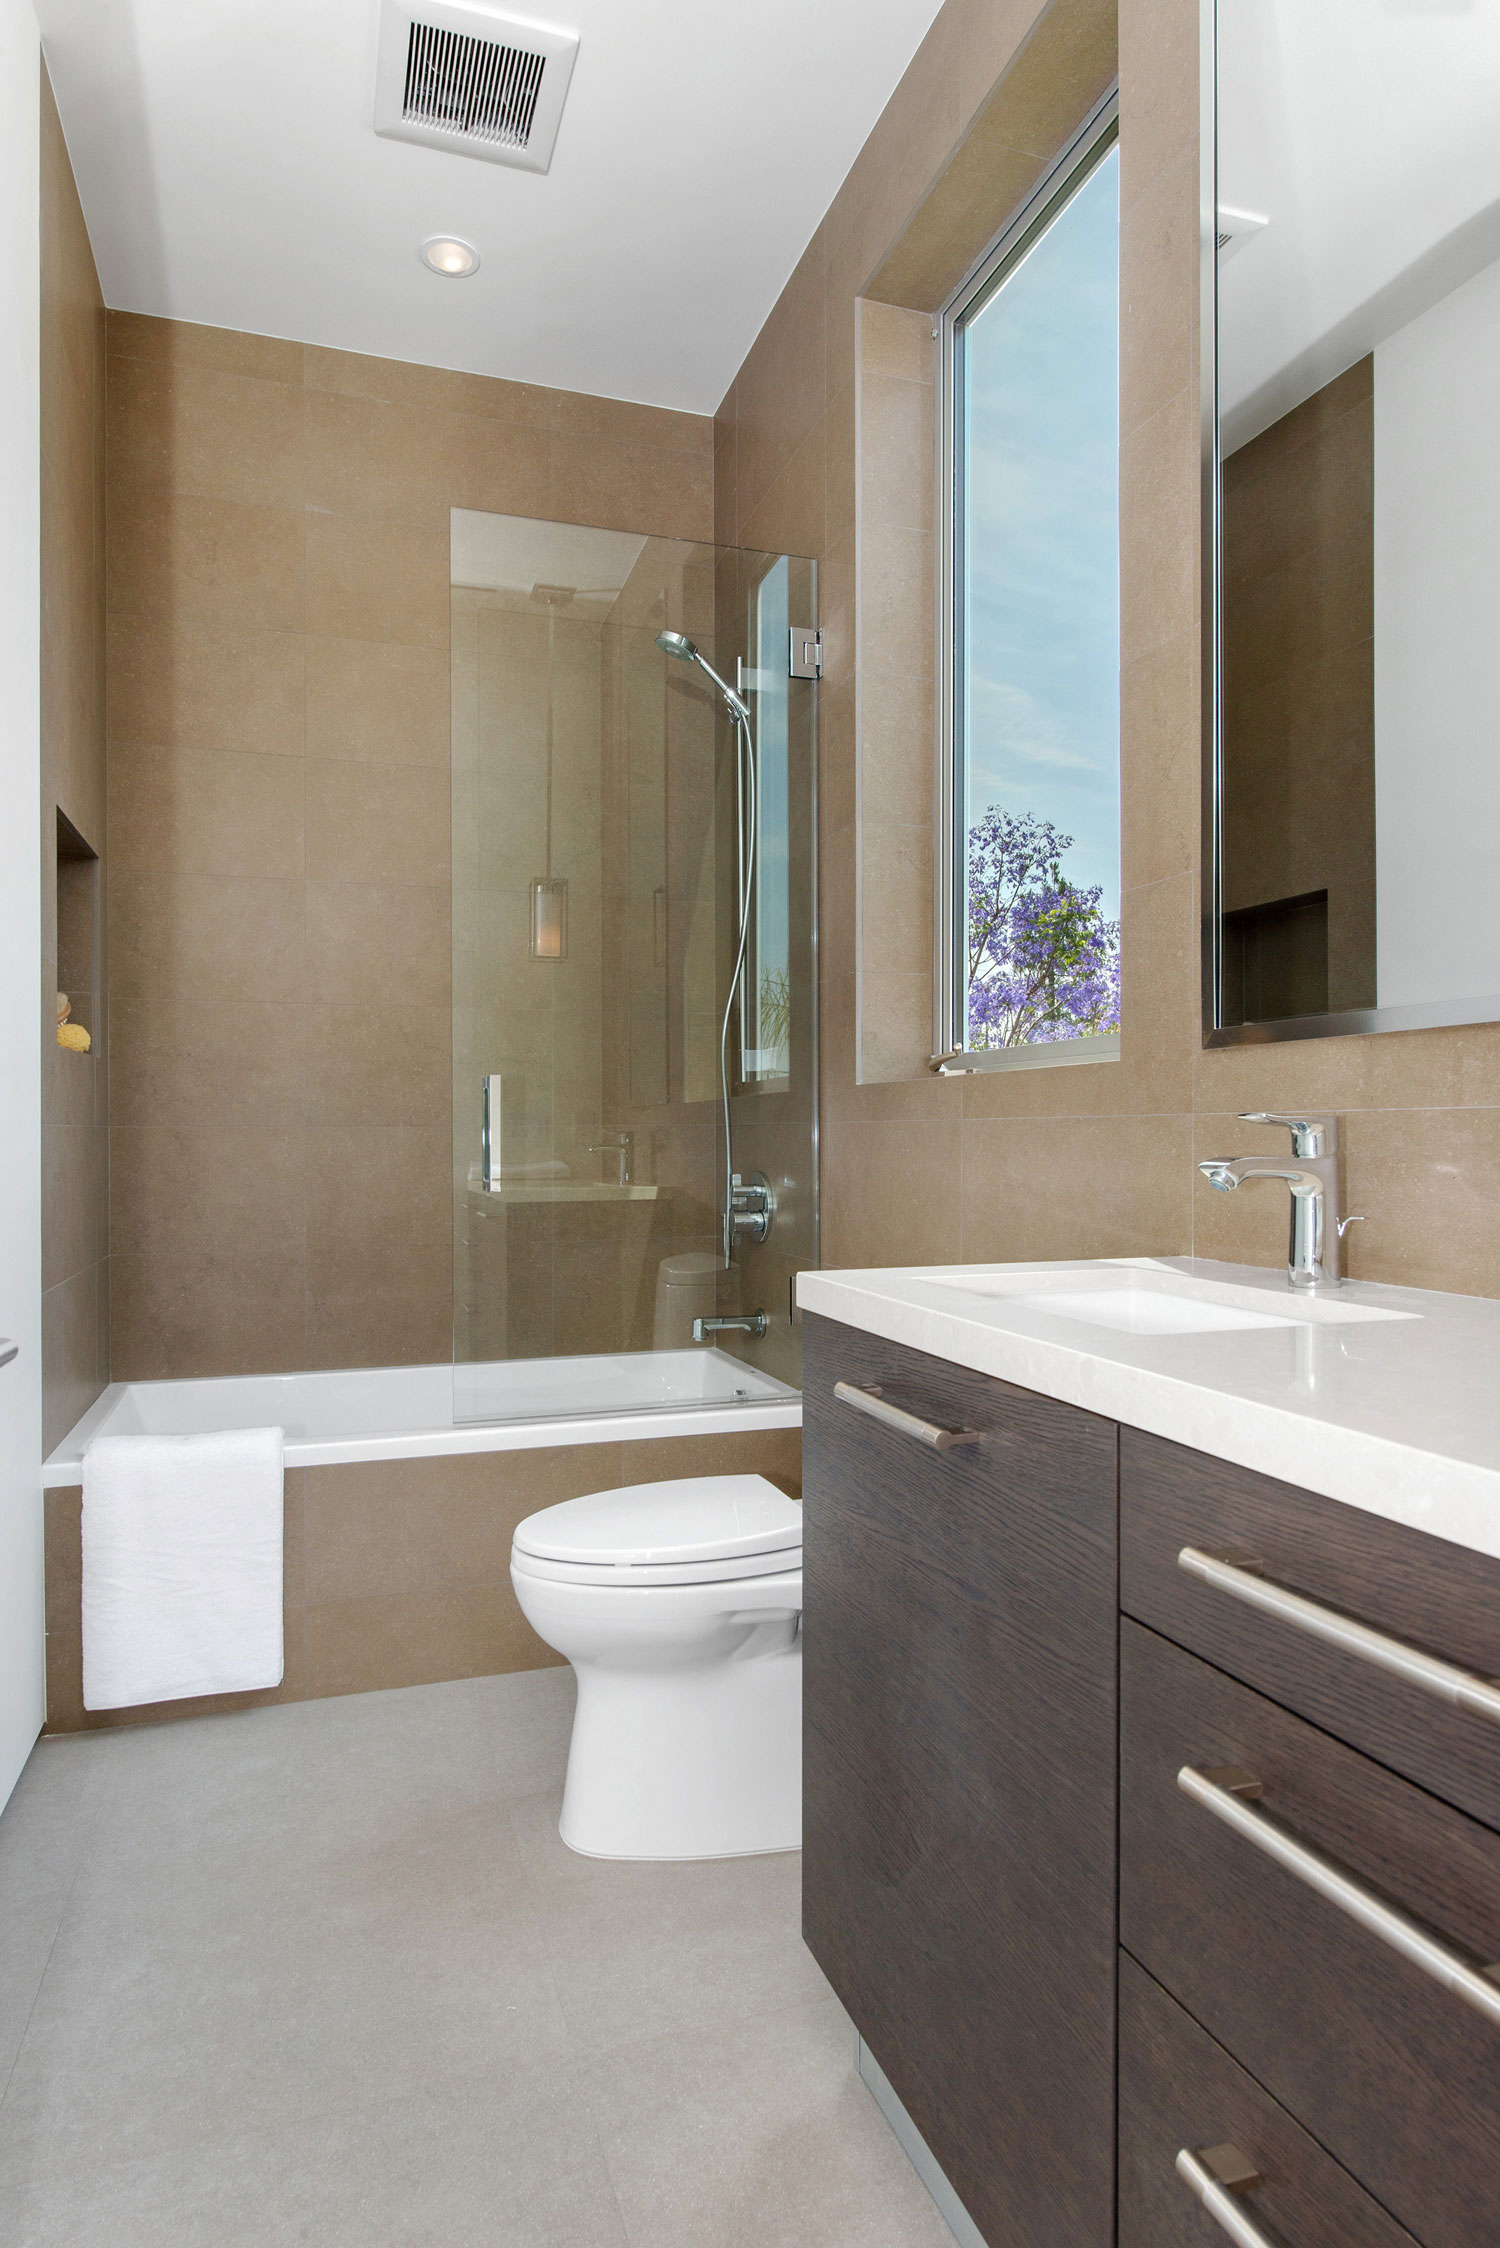 9 необычных решений для ванной комнаты из проектов дизайнеров